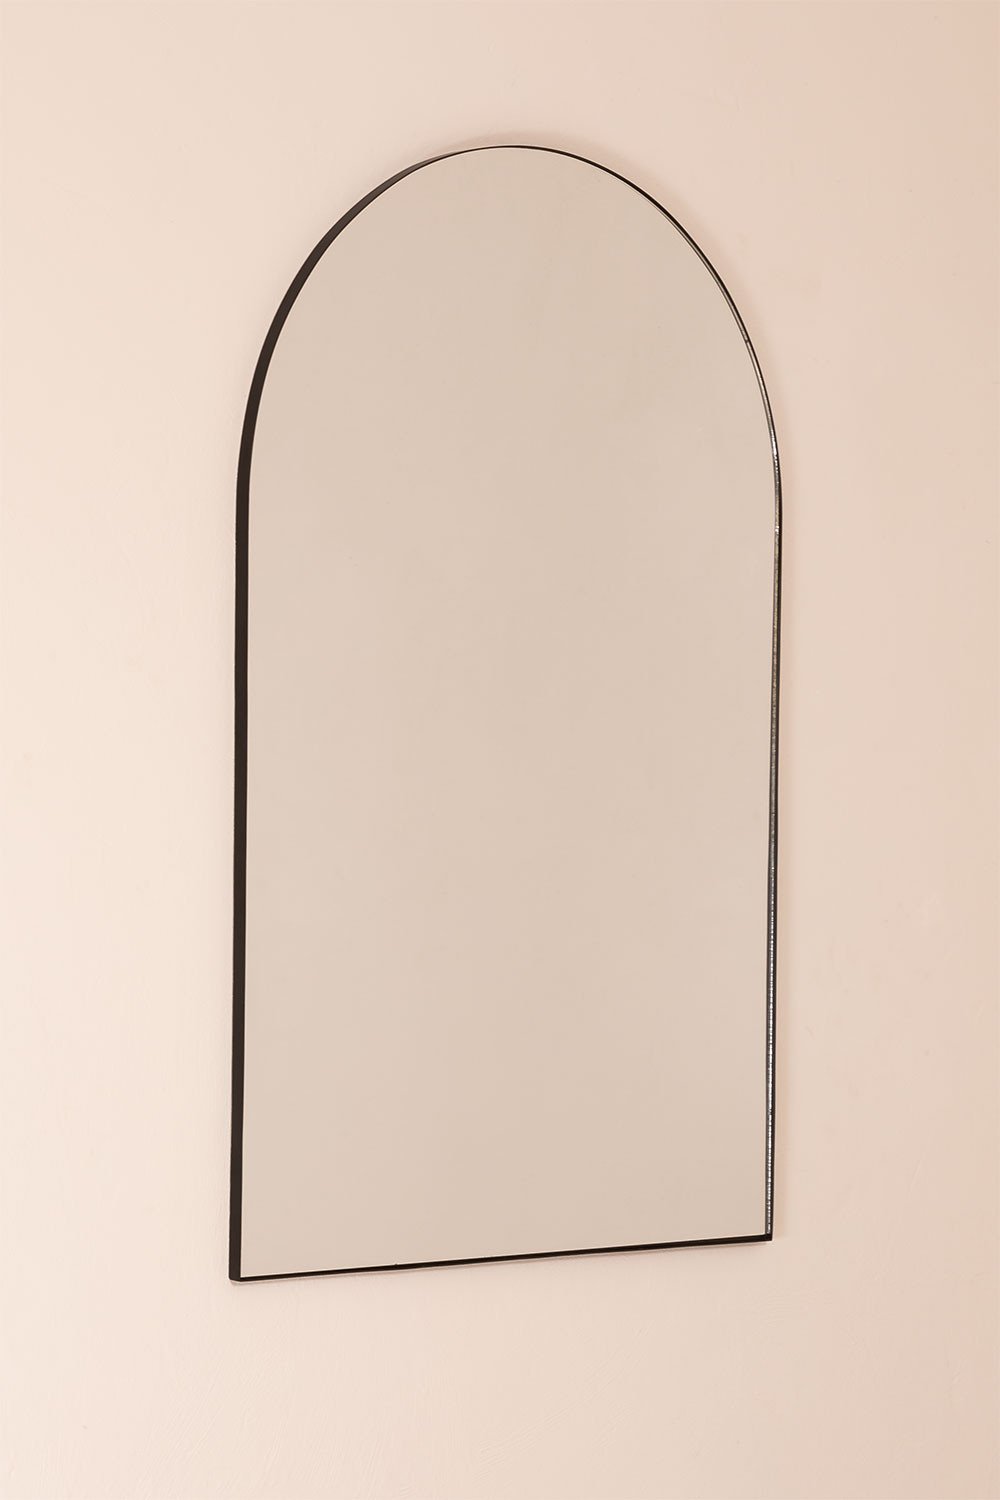 Specchio da parete in metallo (120x77 cm) Ingrid, immagine della galleria 2